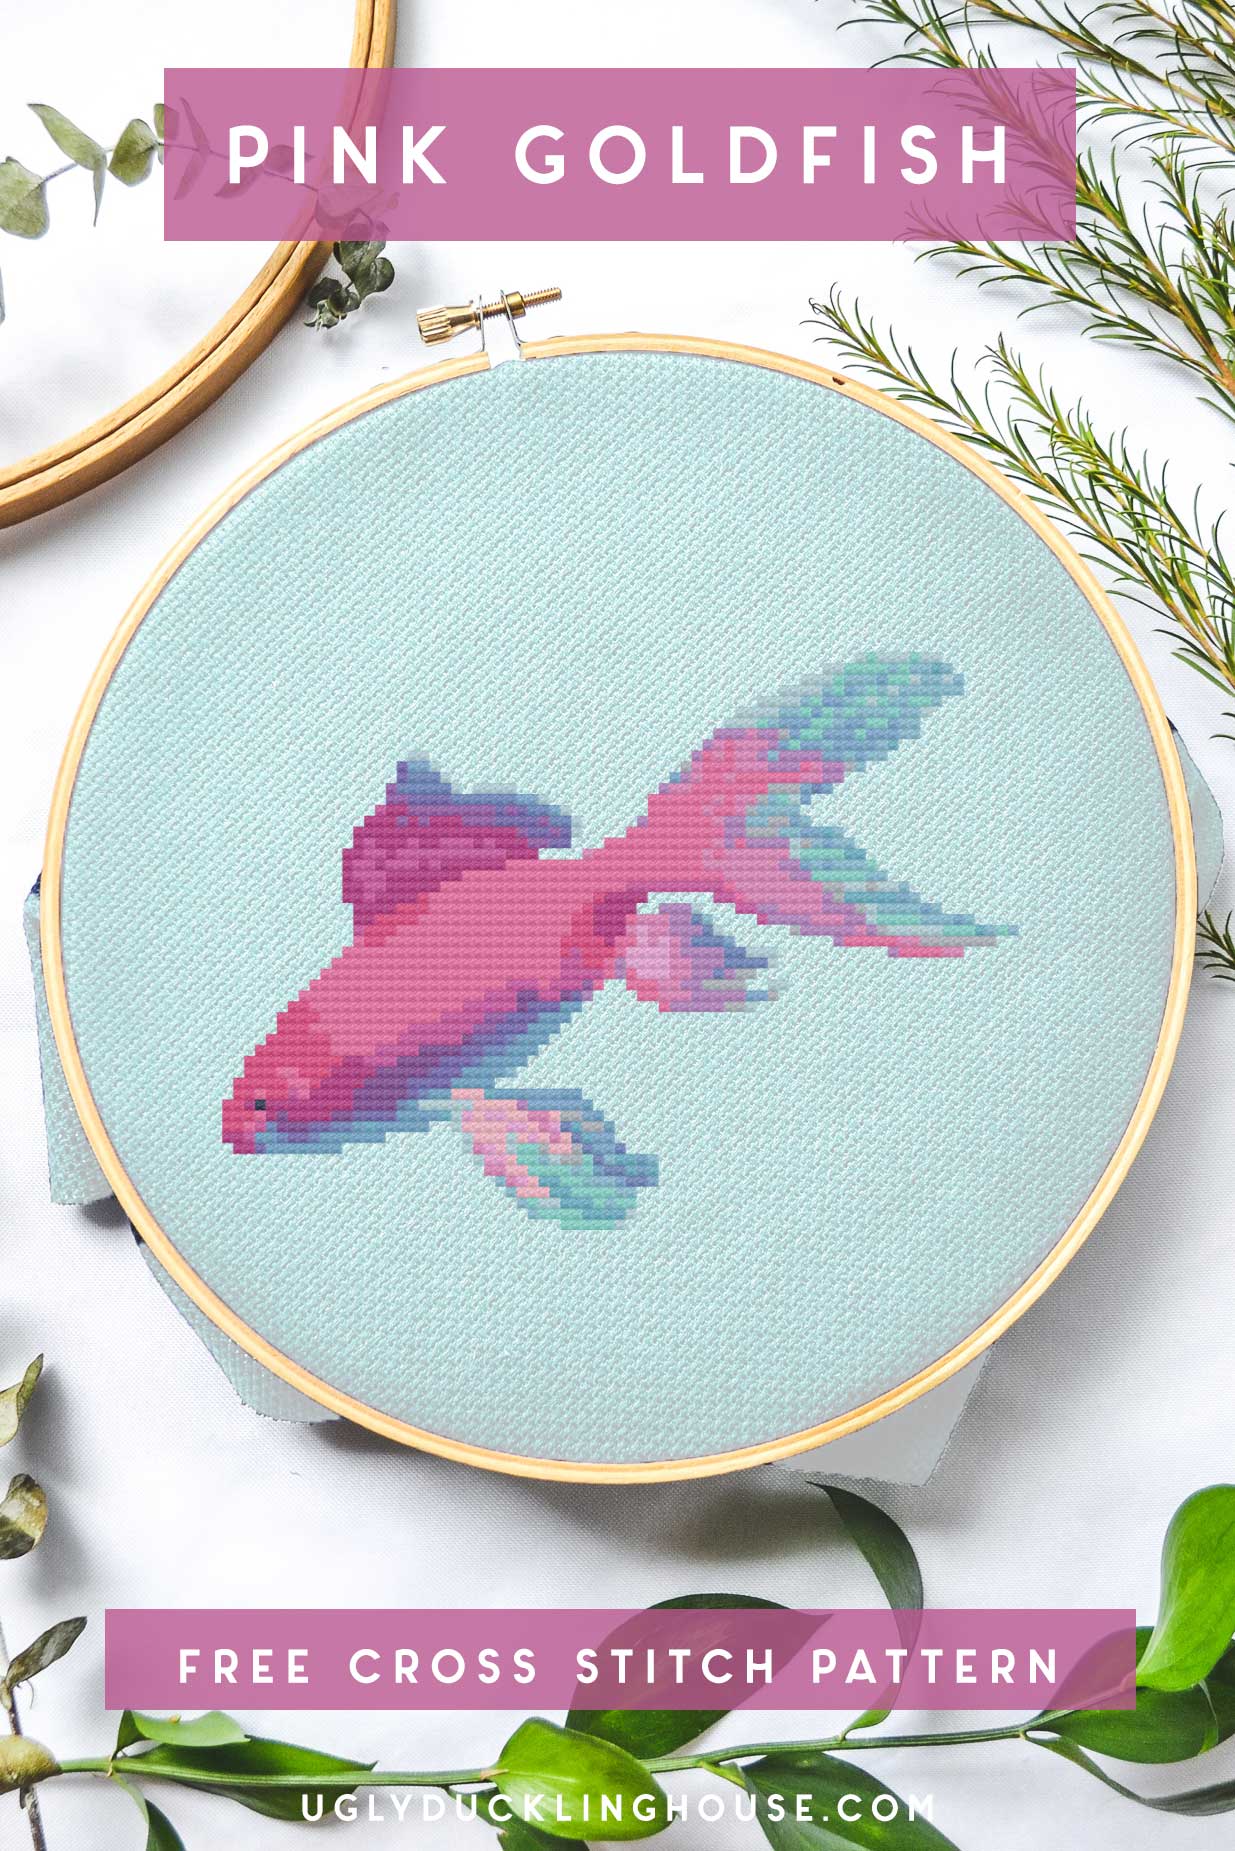 Beautiful Pink Goldfish Cross Stitch Pattern Idea